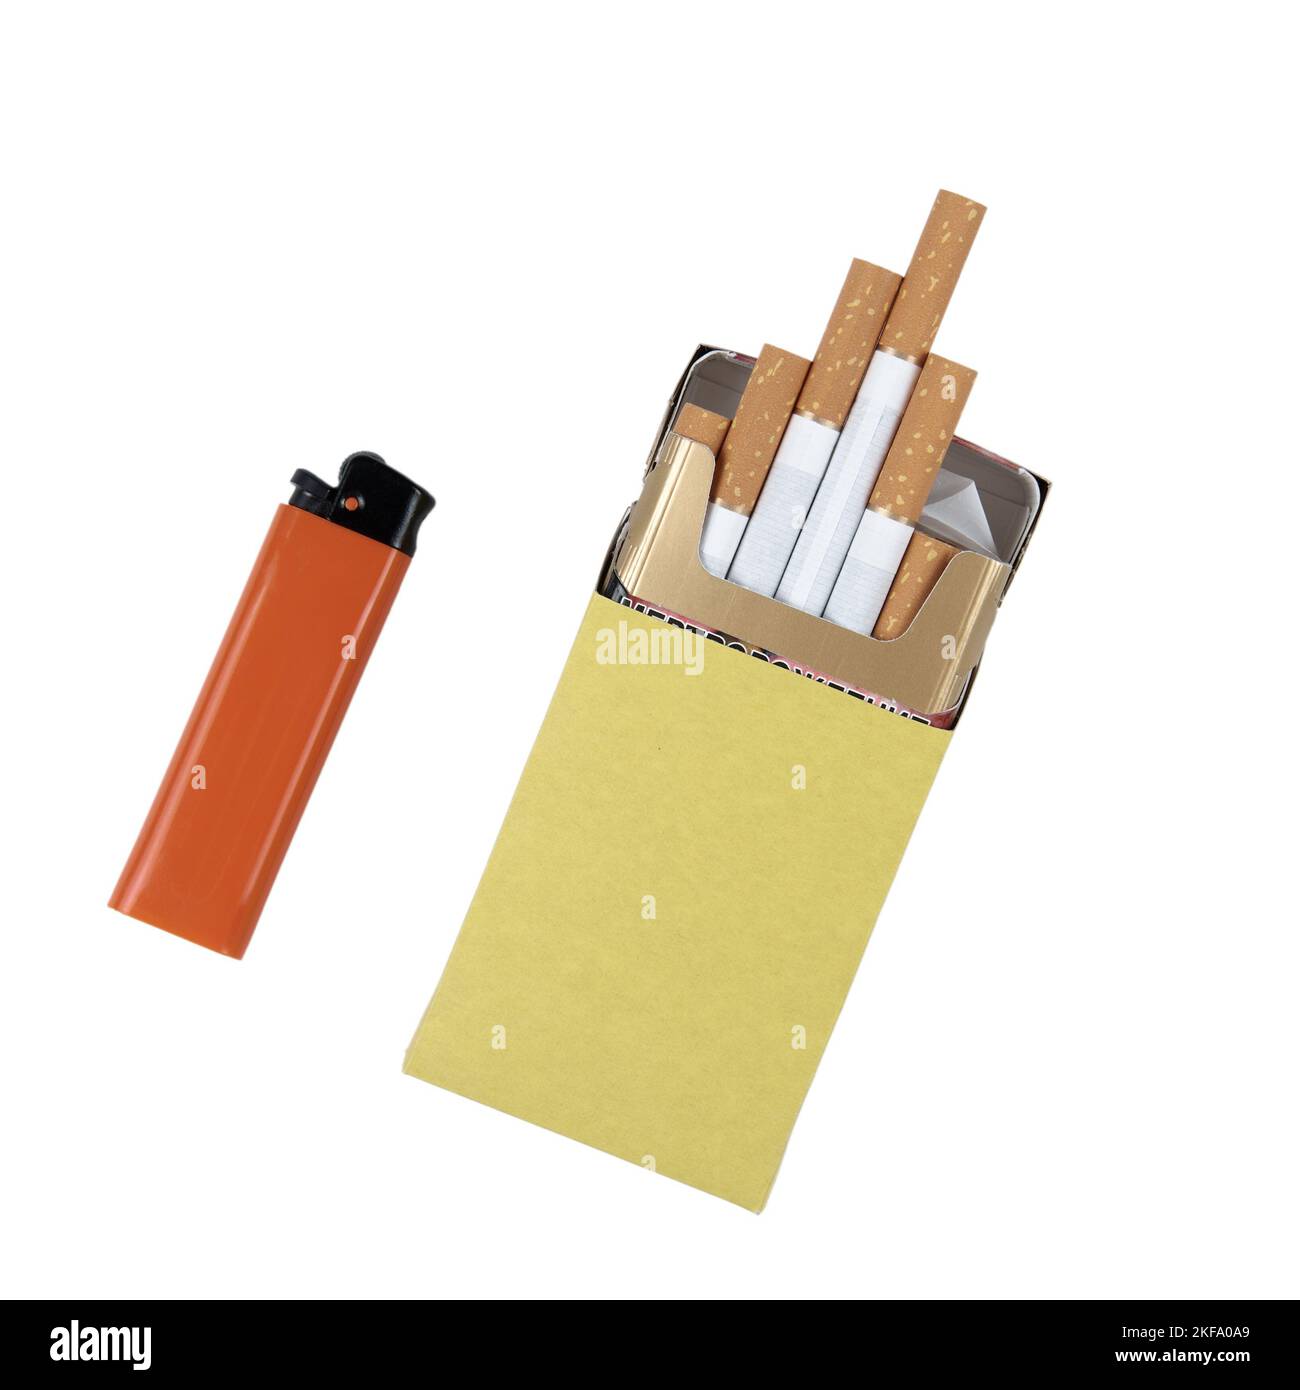 Paquet de cigarettes jaune et briquet à gaz en plastique orange isolé sur fond blanc avec passe-fil Banque D'Images